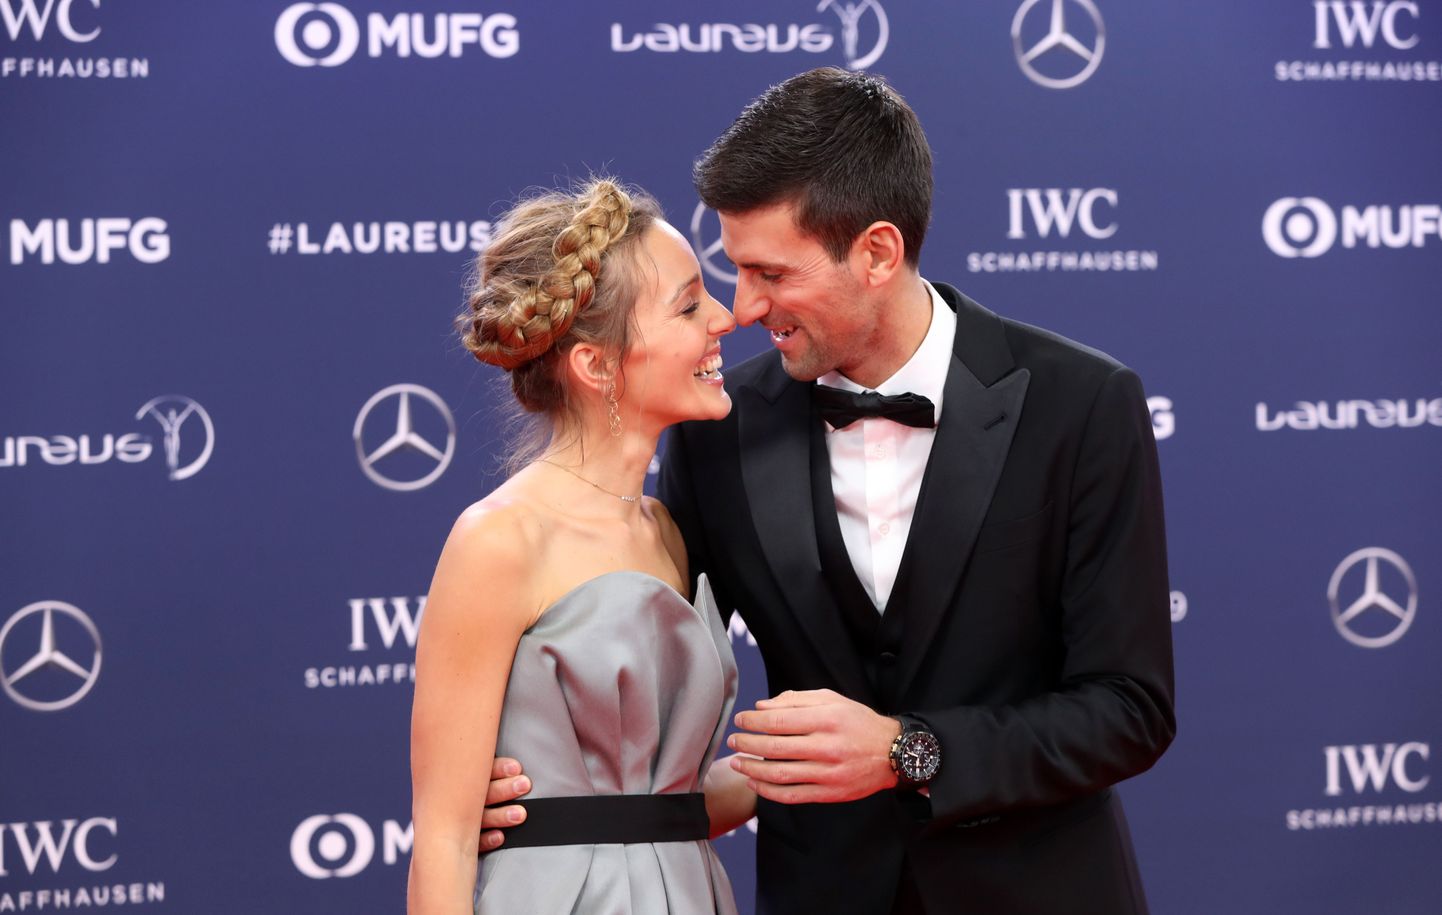 Serbian tennisetäht Novak Djokovic koos oma abikaasa Jelenaga 2019. aasta Laureuse auhindade galal.